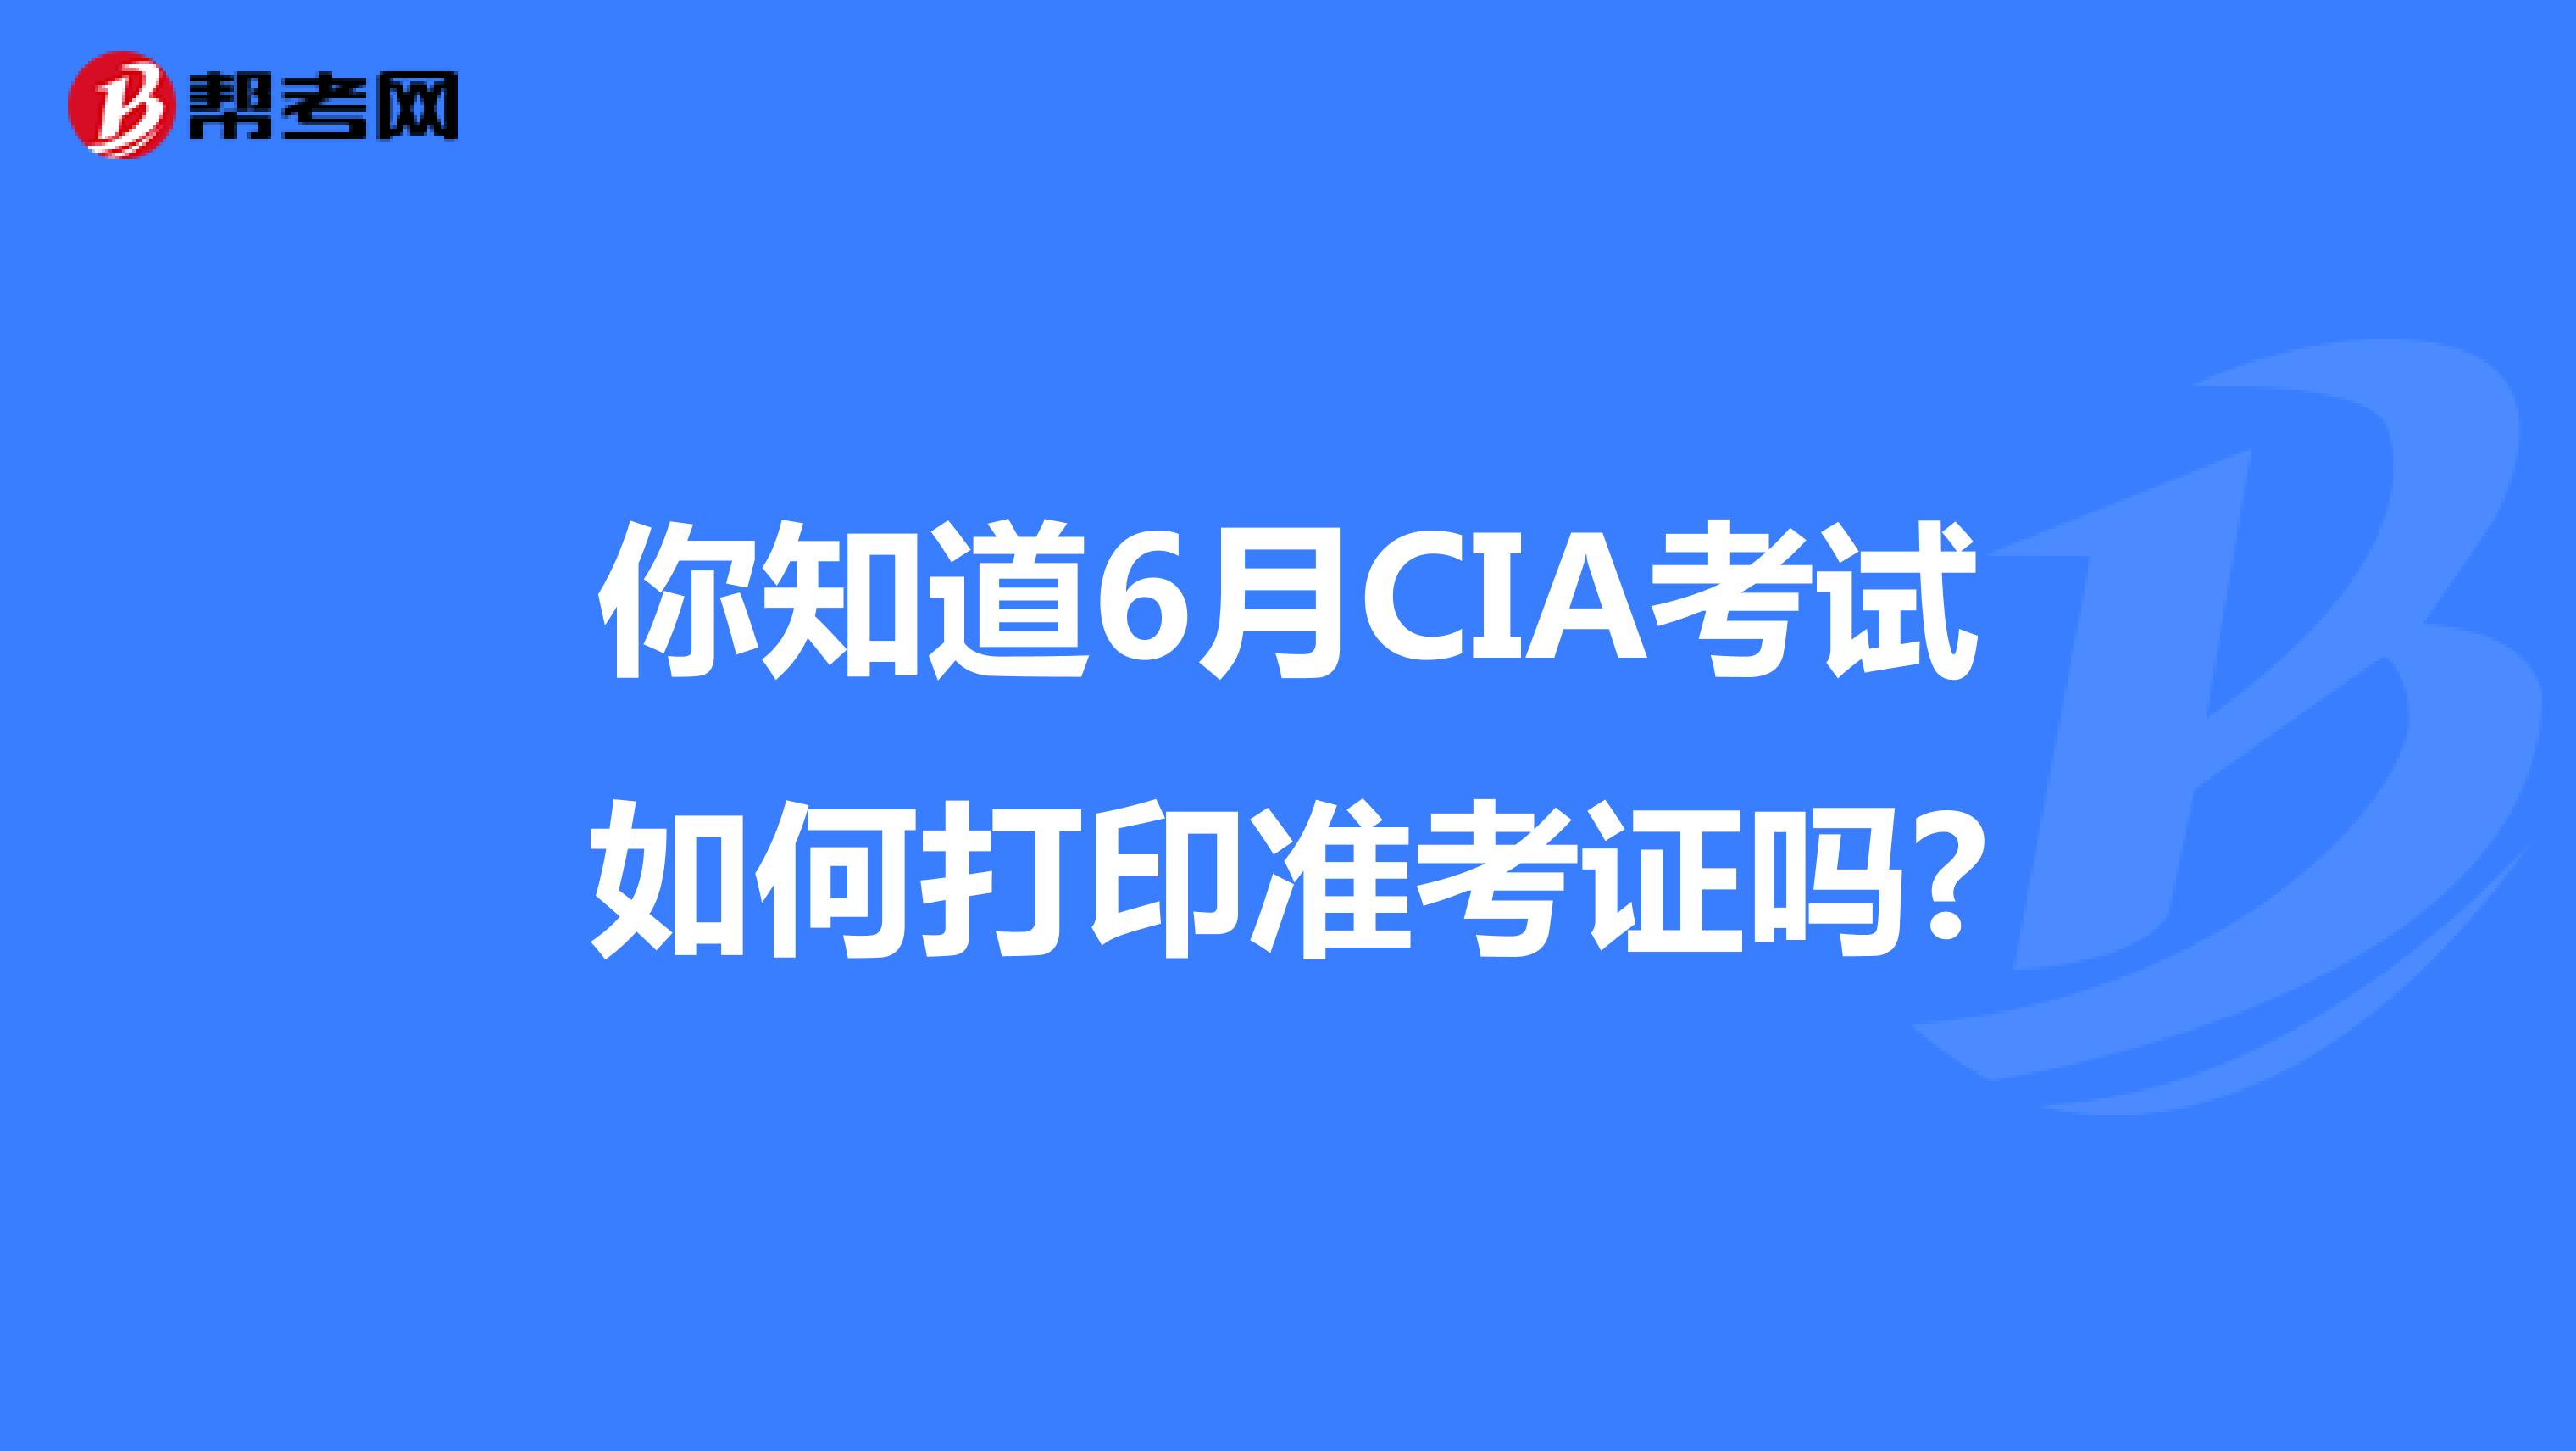 你知道6月CIA考试如何打印准考证吗?